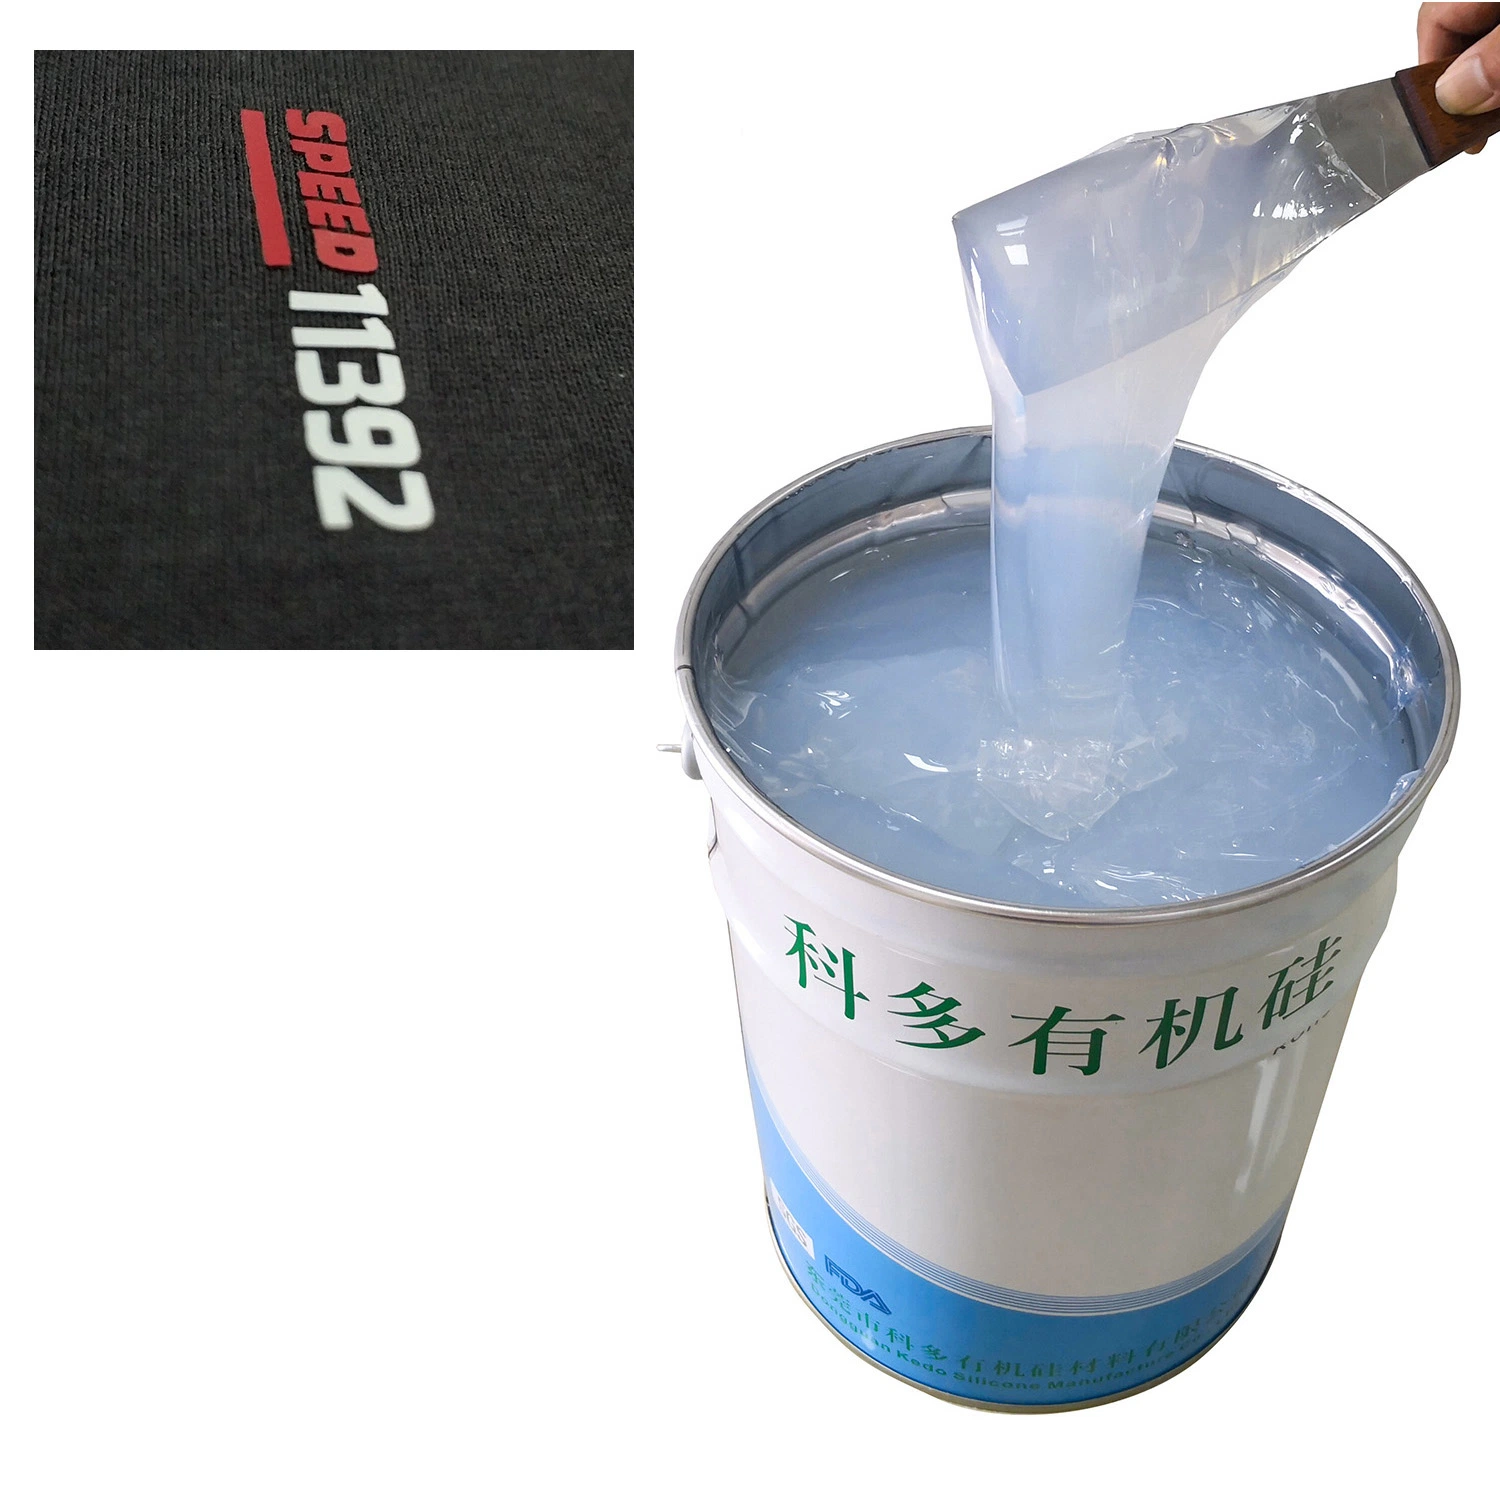 Высокое качество жидкого силикона для базового покрытия и цвет покрытия для тканей